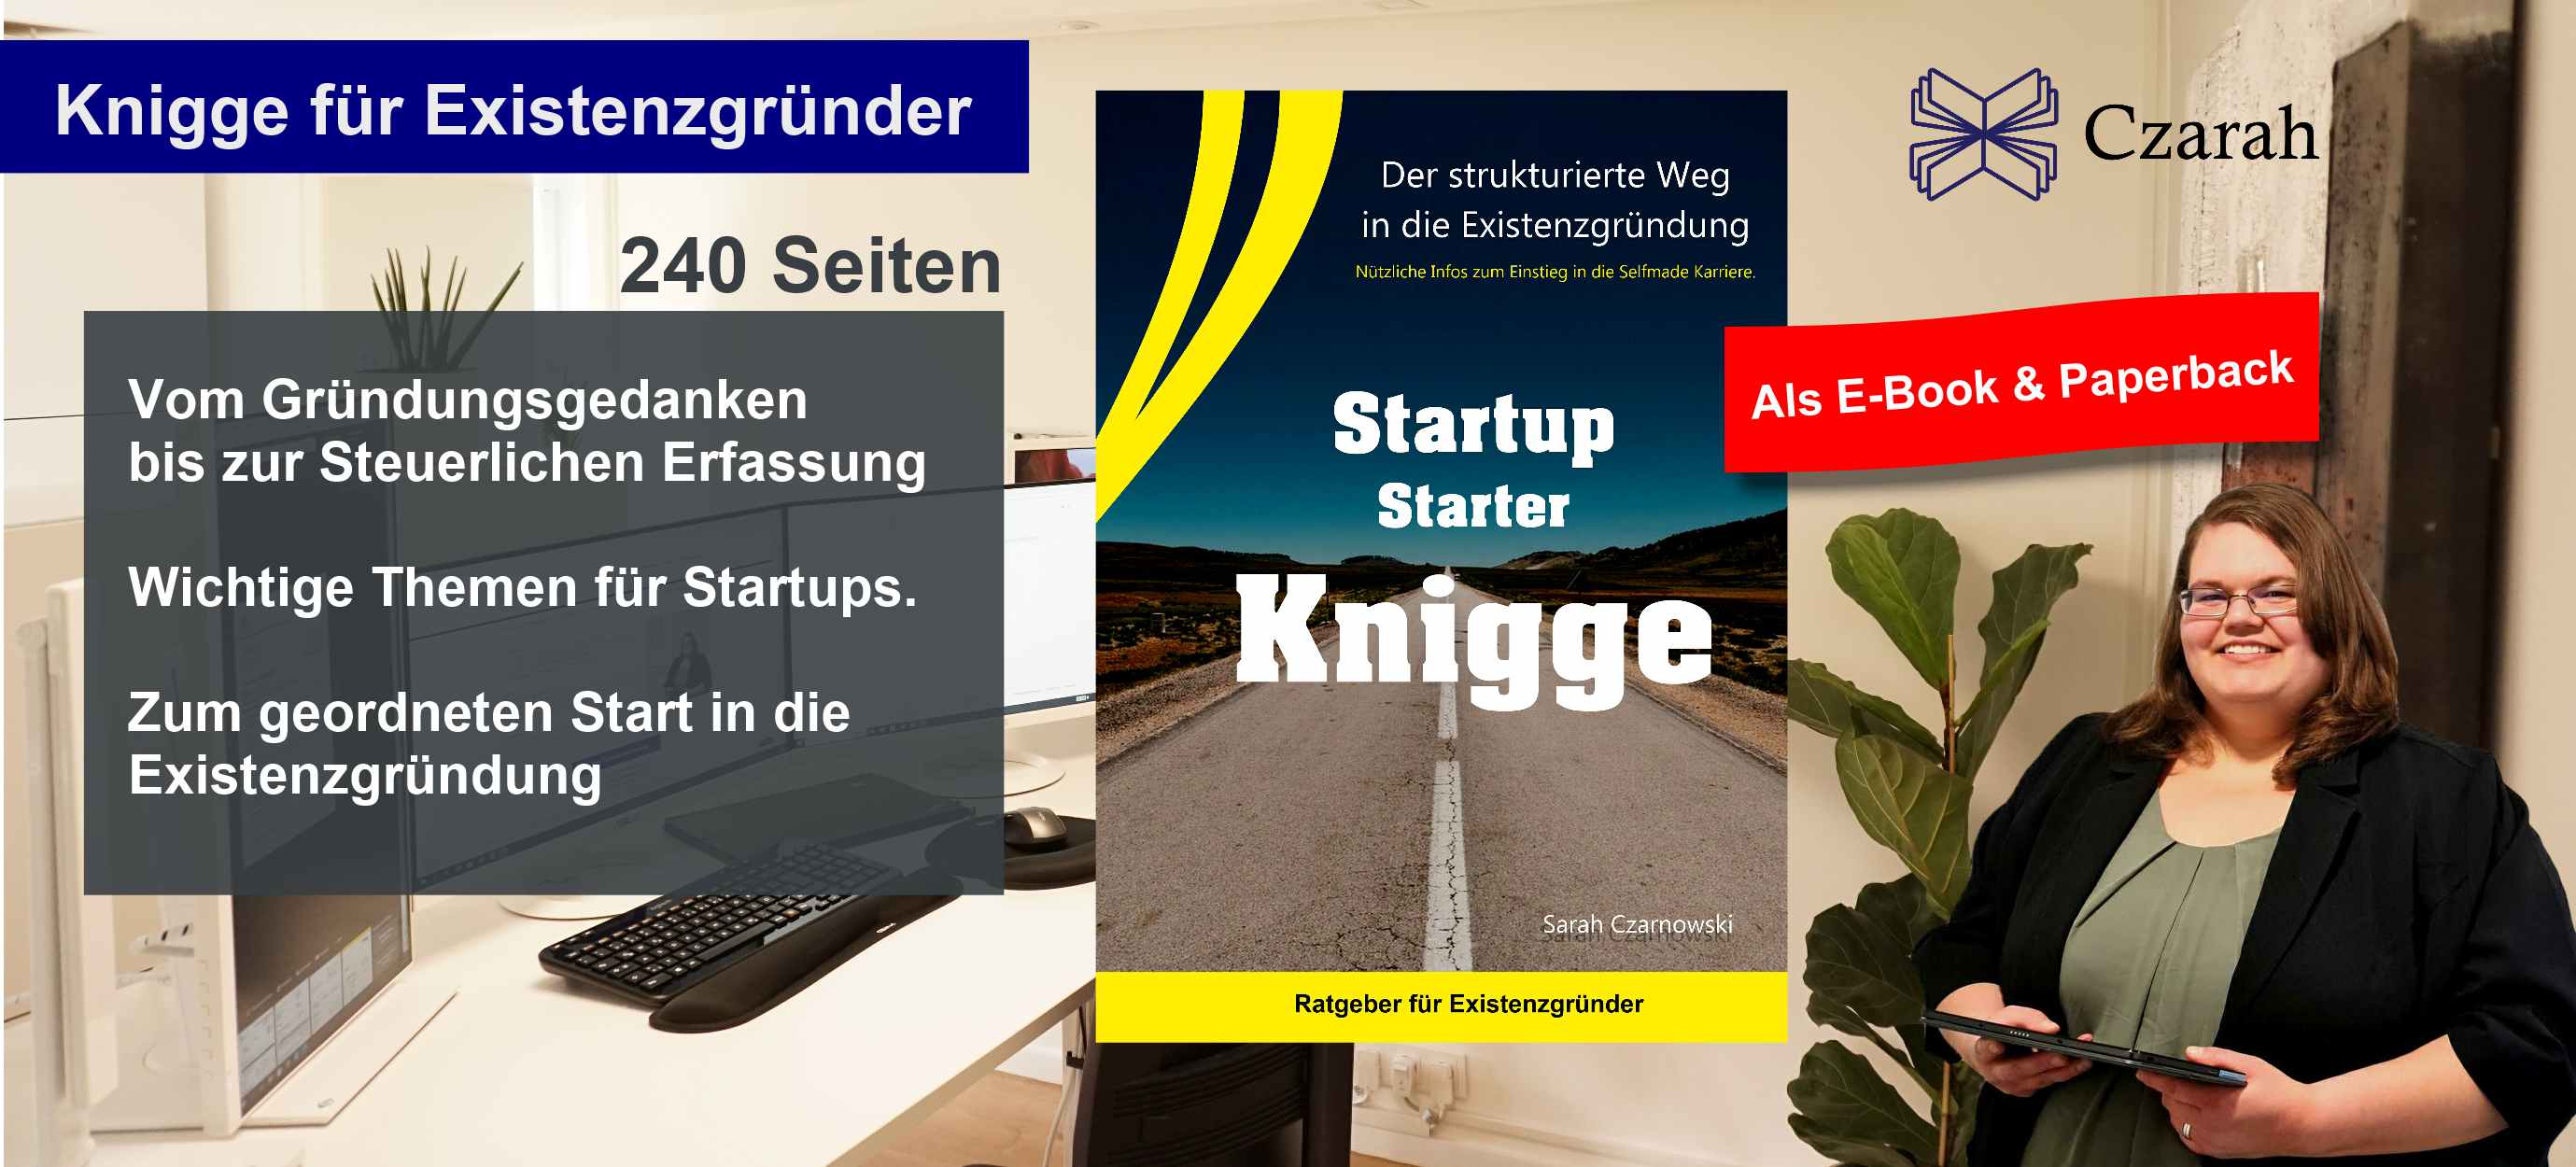 Startup Starter Knigge Buch